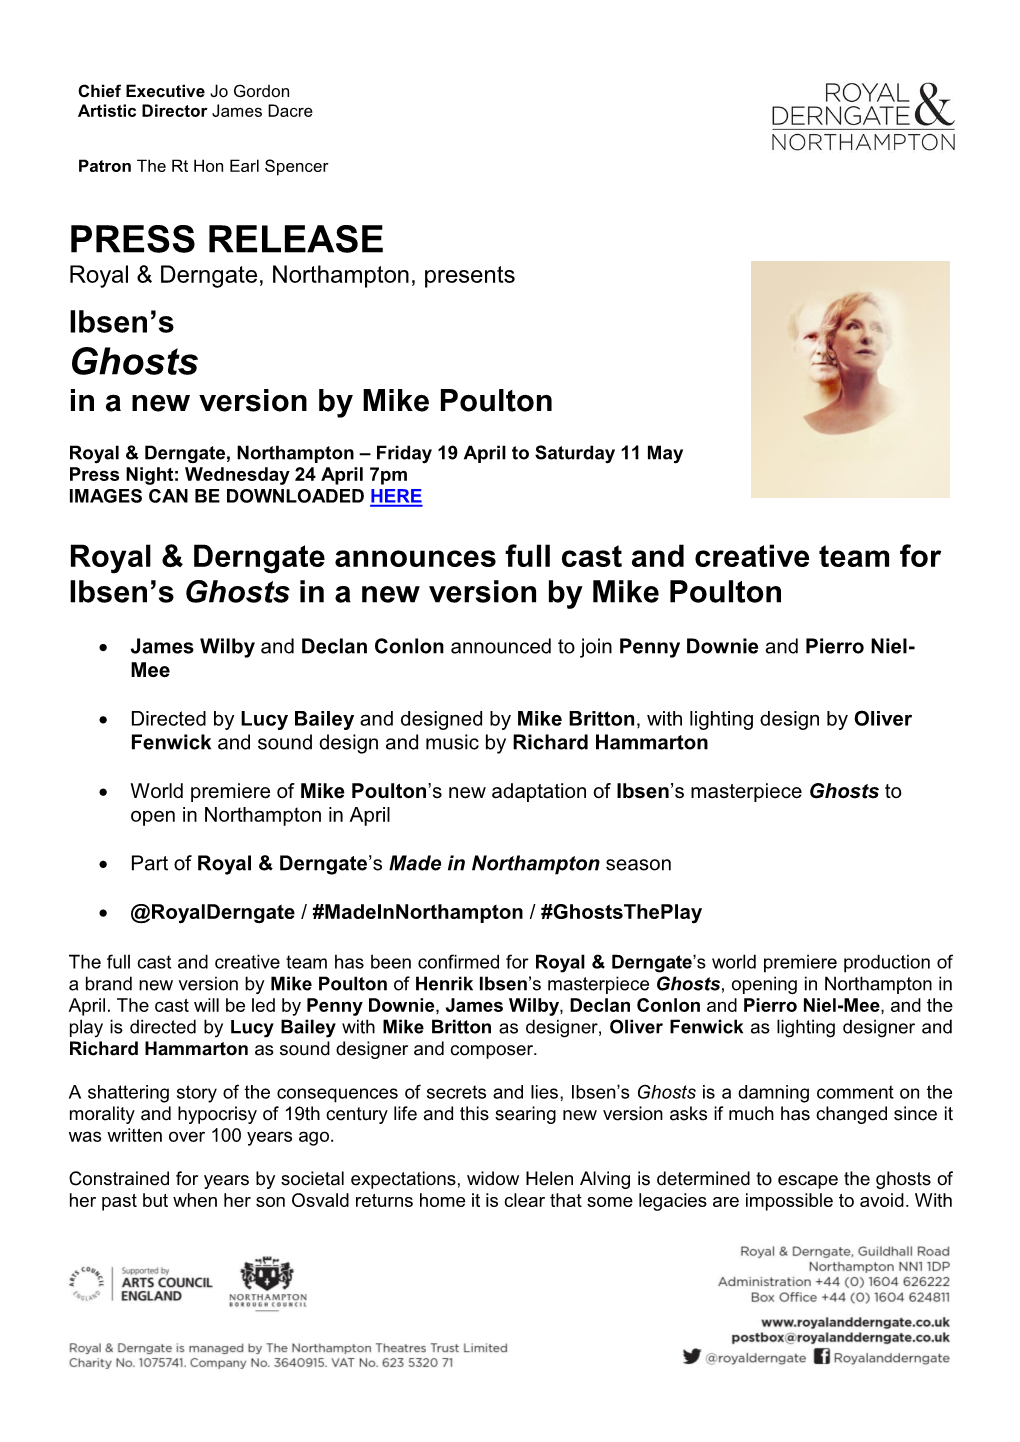 PRESS RELEASE Royal & Derngate, Northampton, Presents